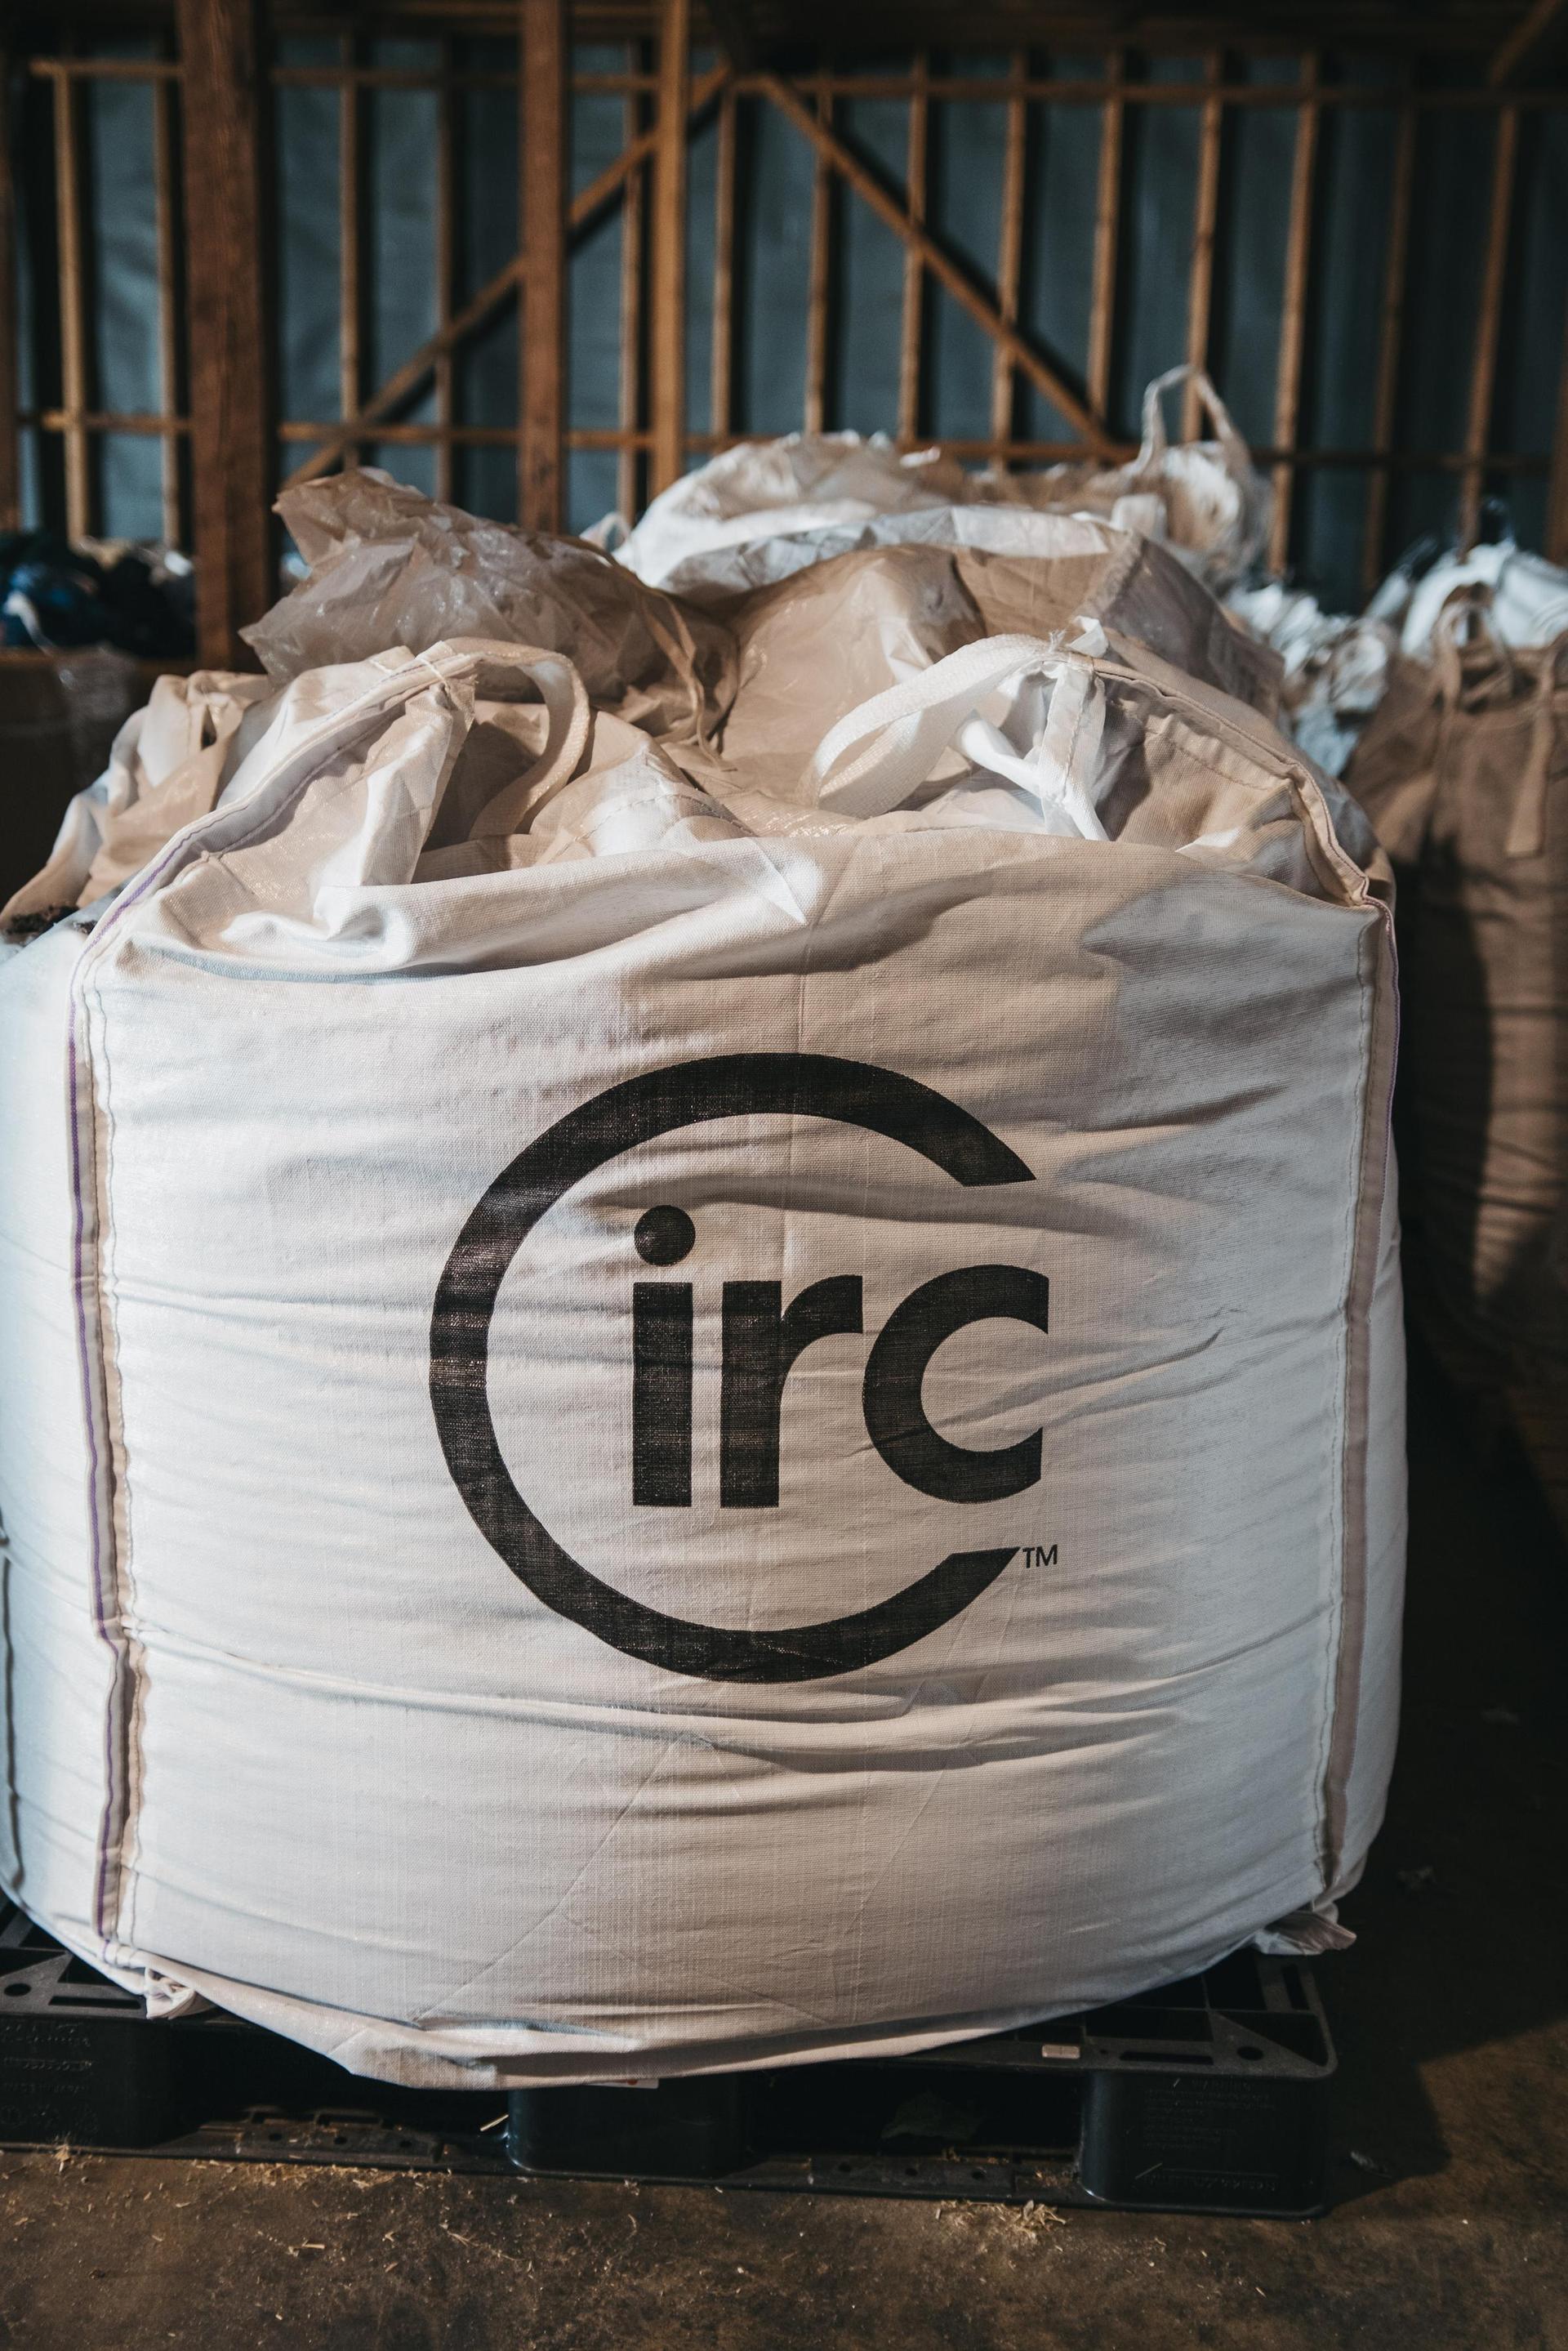 circ garment recycling collection center